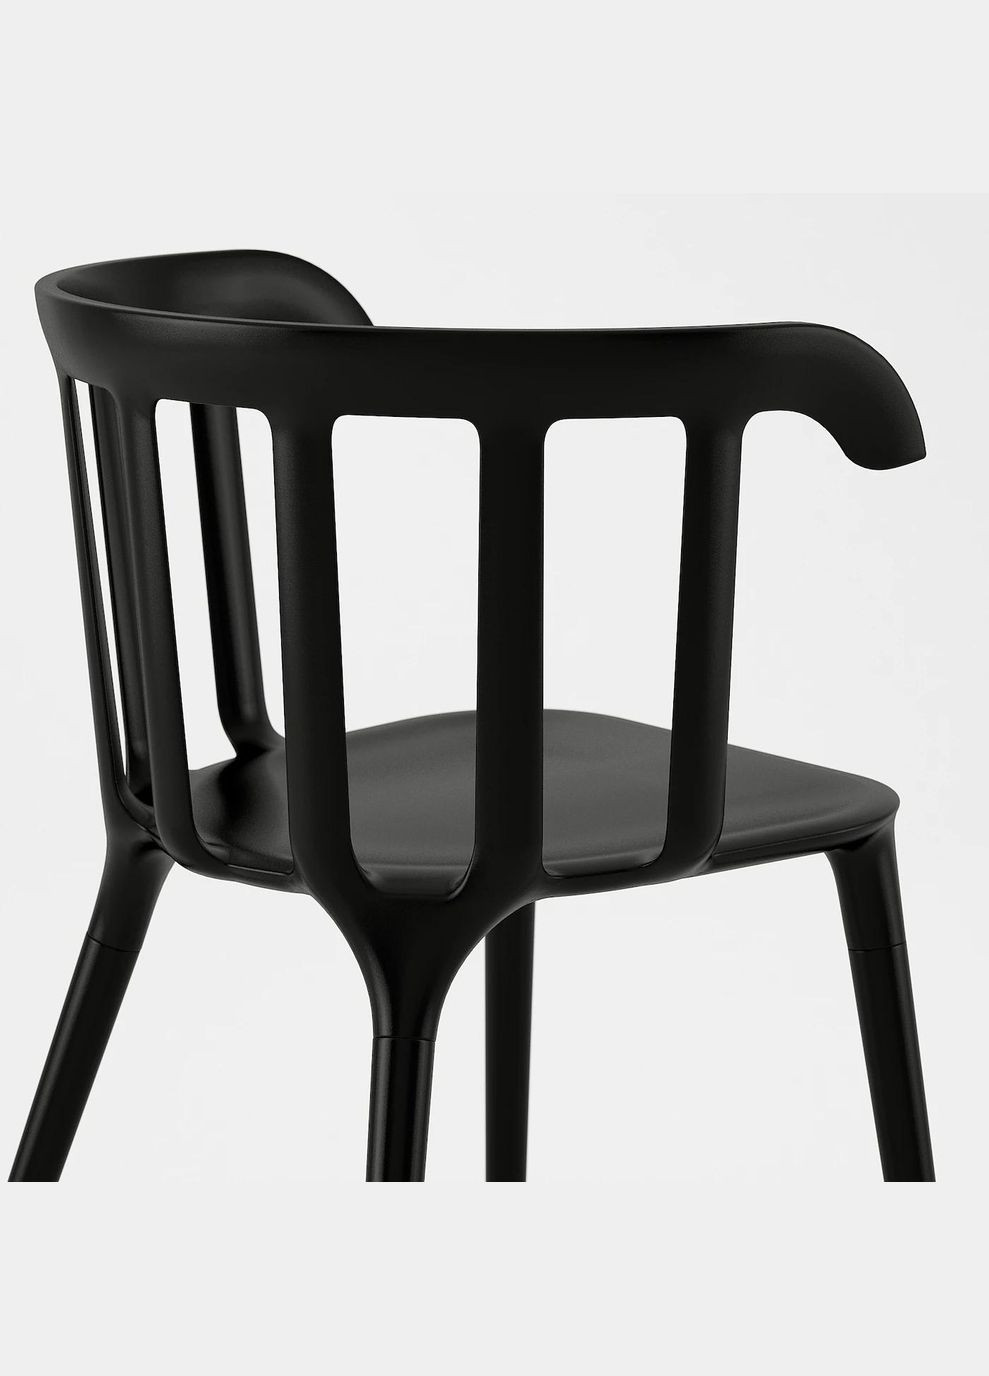 Стіл і 6 стільців ІКЕА MOCKELBY / PS 2012 235х100 см (s99131790) IKEA (278405605)